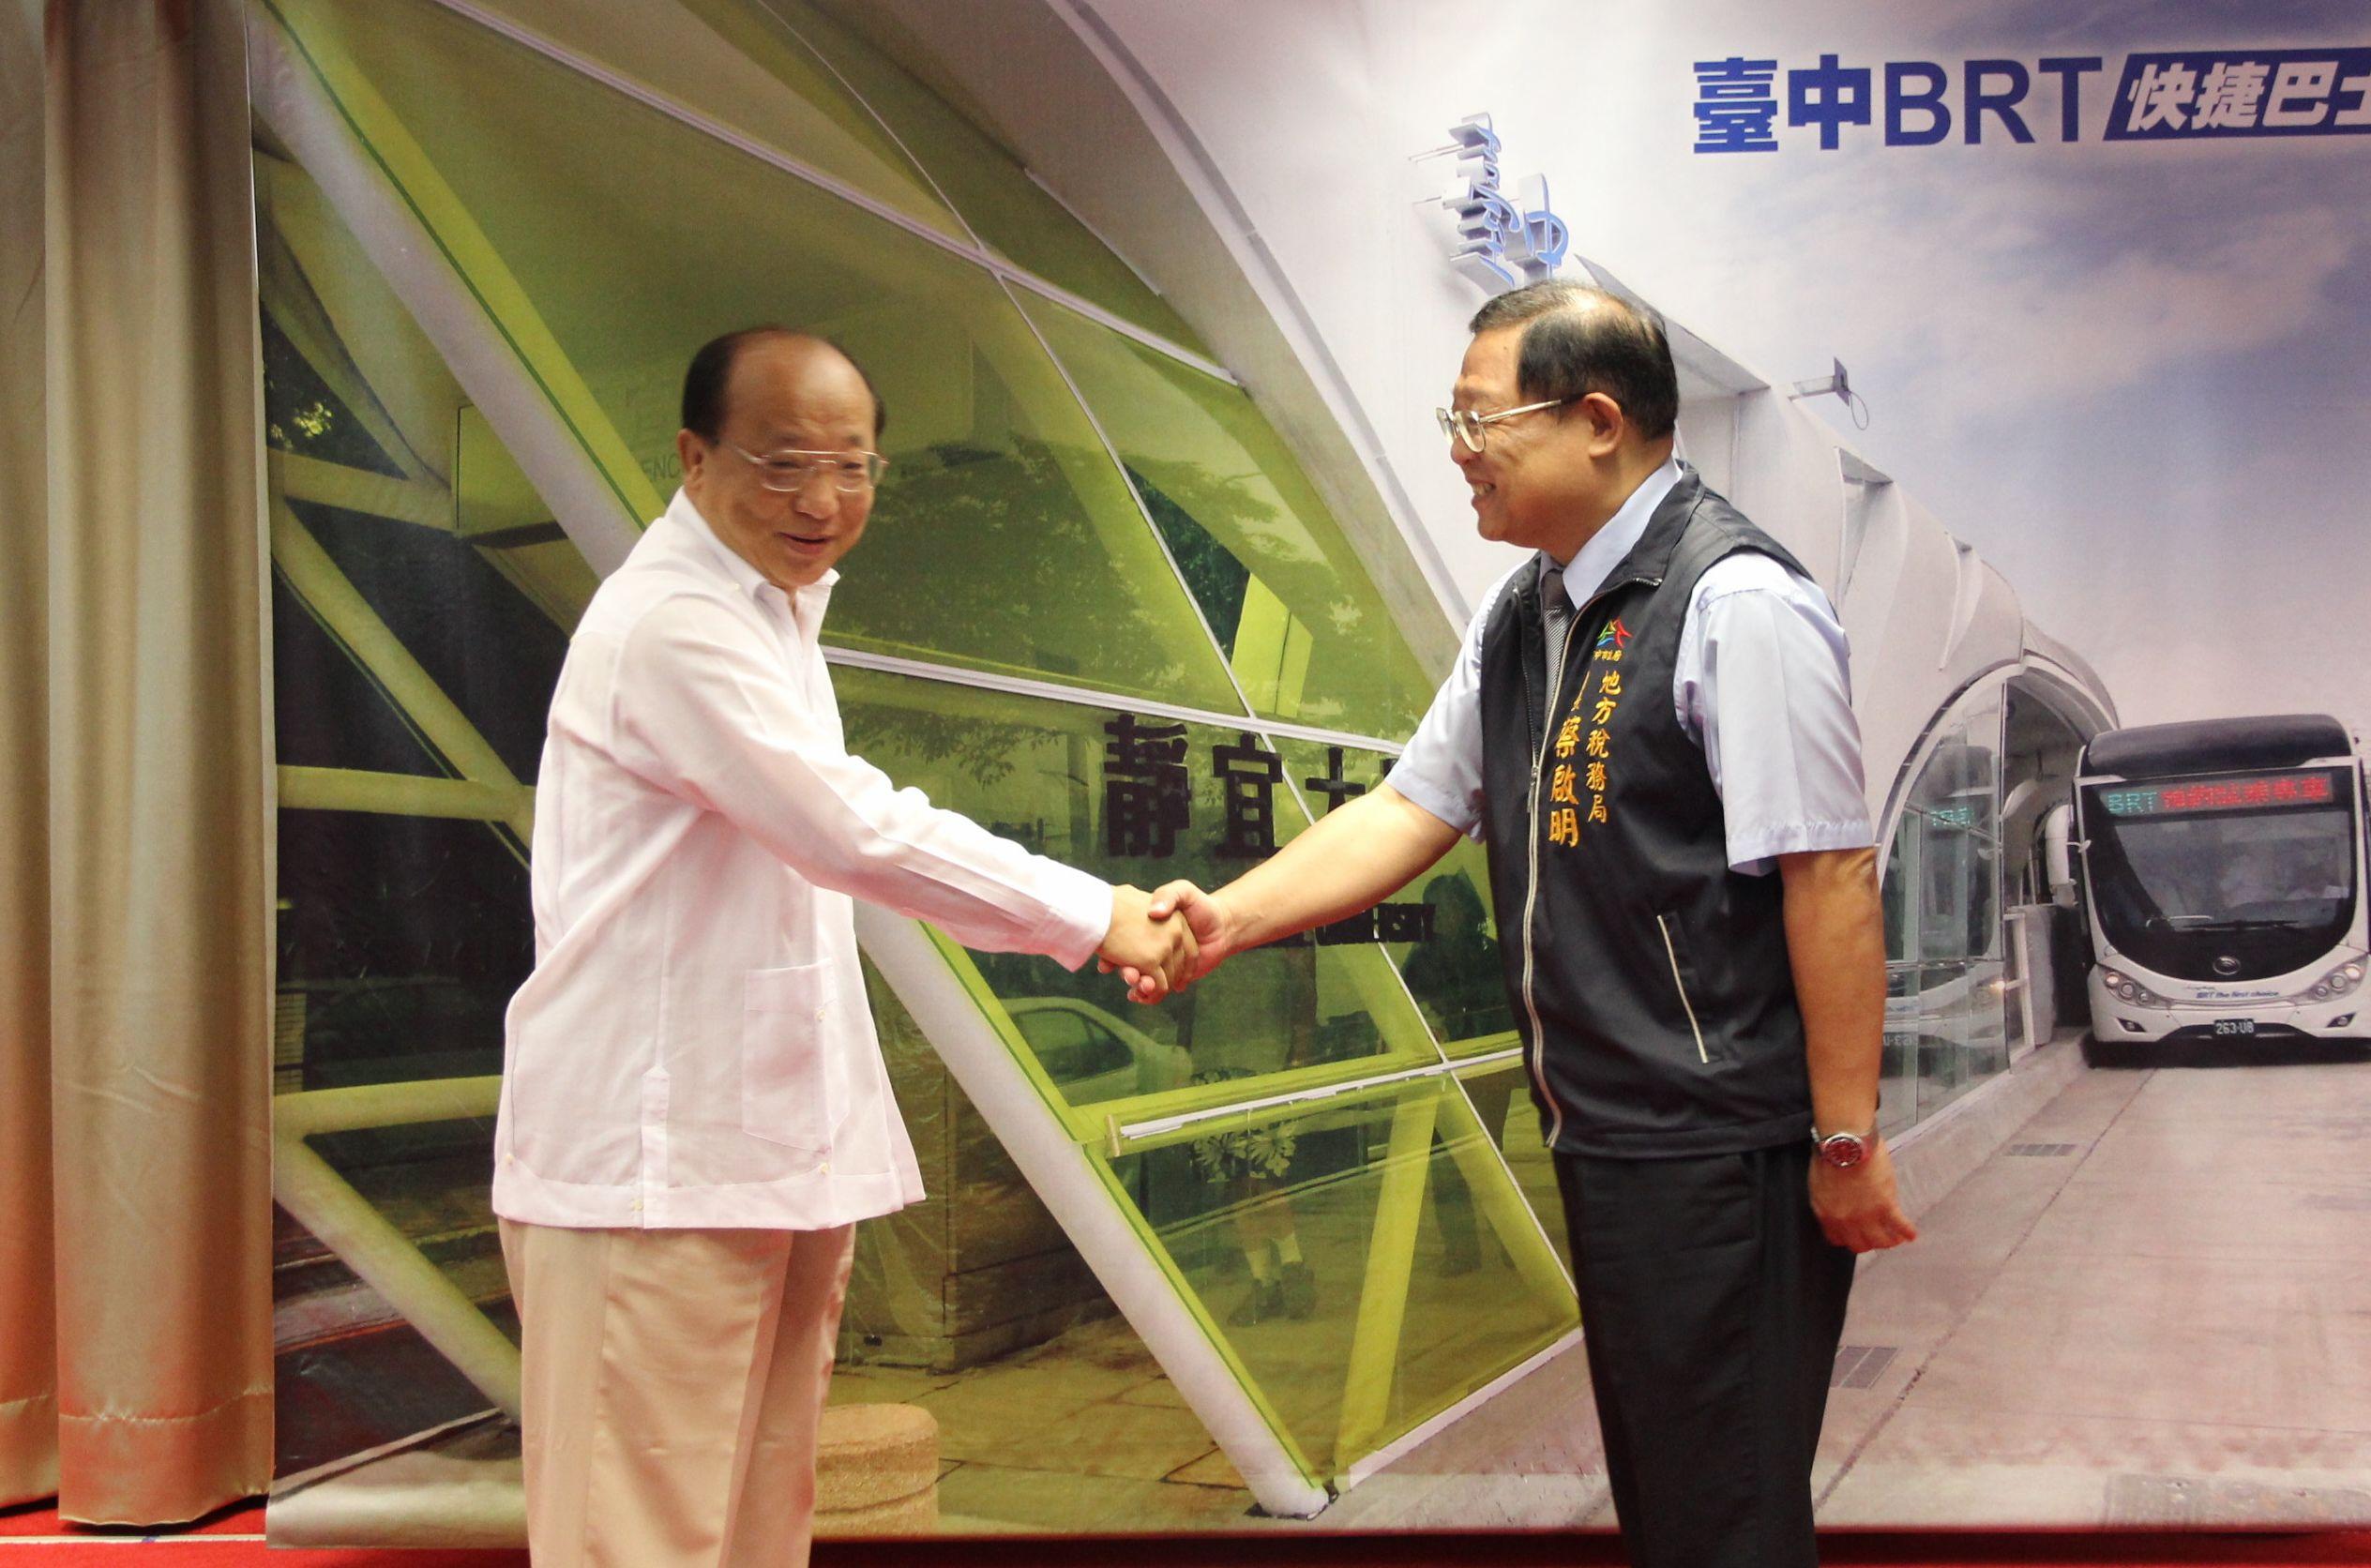 胡市長7月21日於市政會議中頒獎,由蔡局長代表受獎。